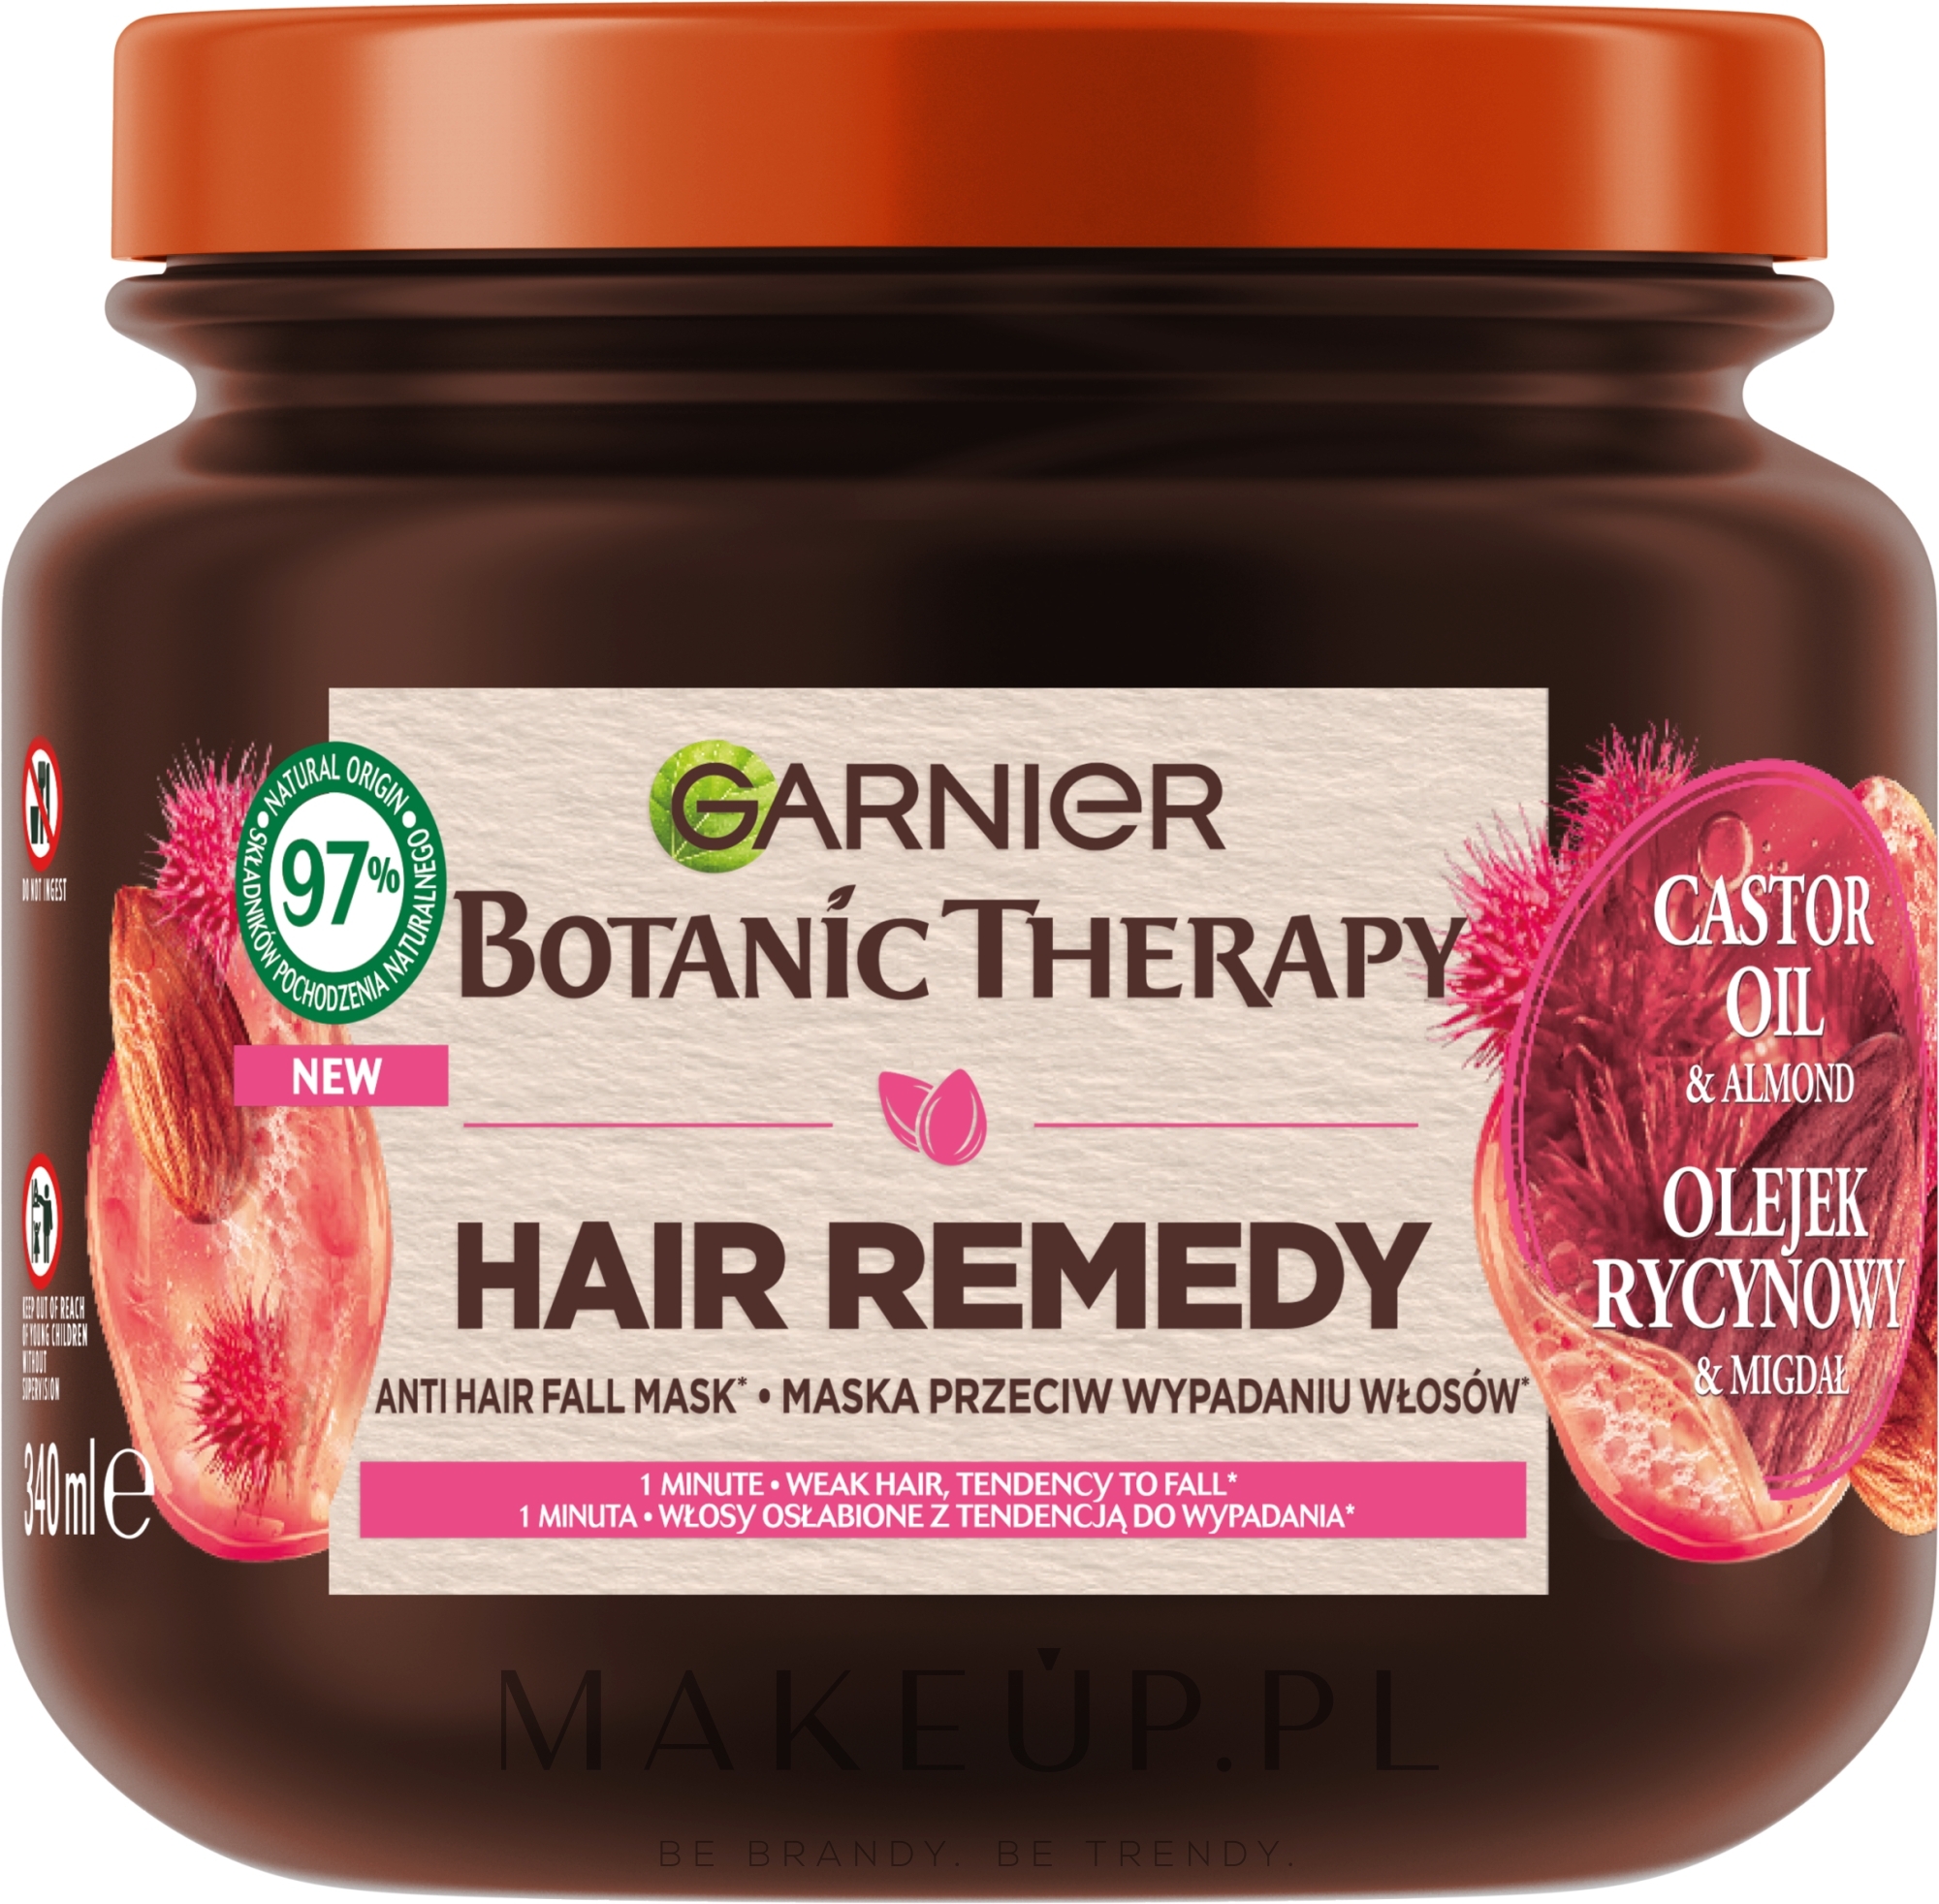 Maska przeciw wypadaniu włosów z olejem rycynowym i migdałami - Garnier Botanic Therapy Hair Remedy Anti Hair Fall Mask — Zdjęcie 340 ml